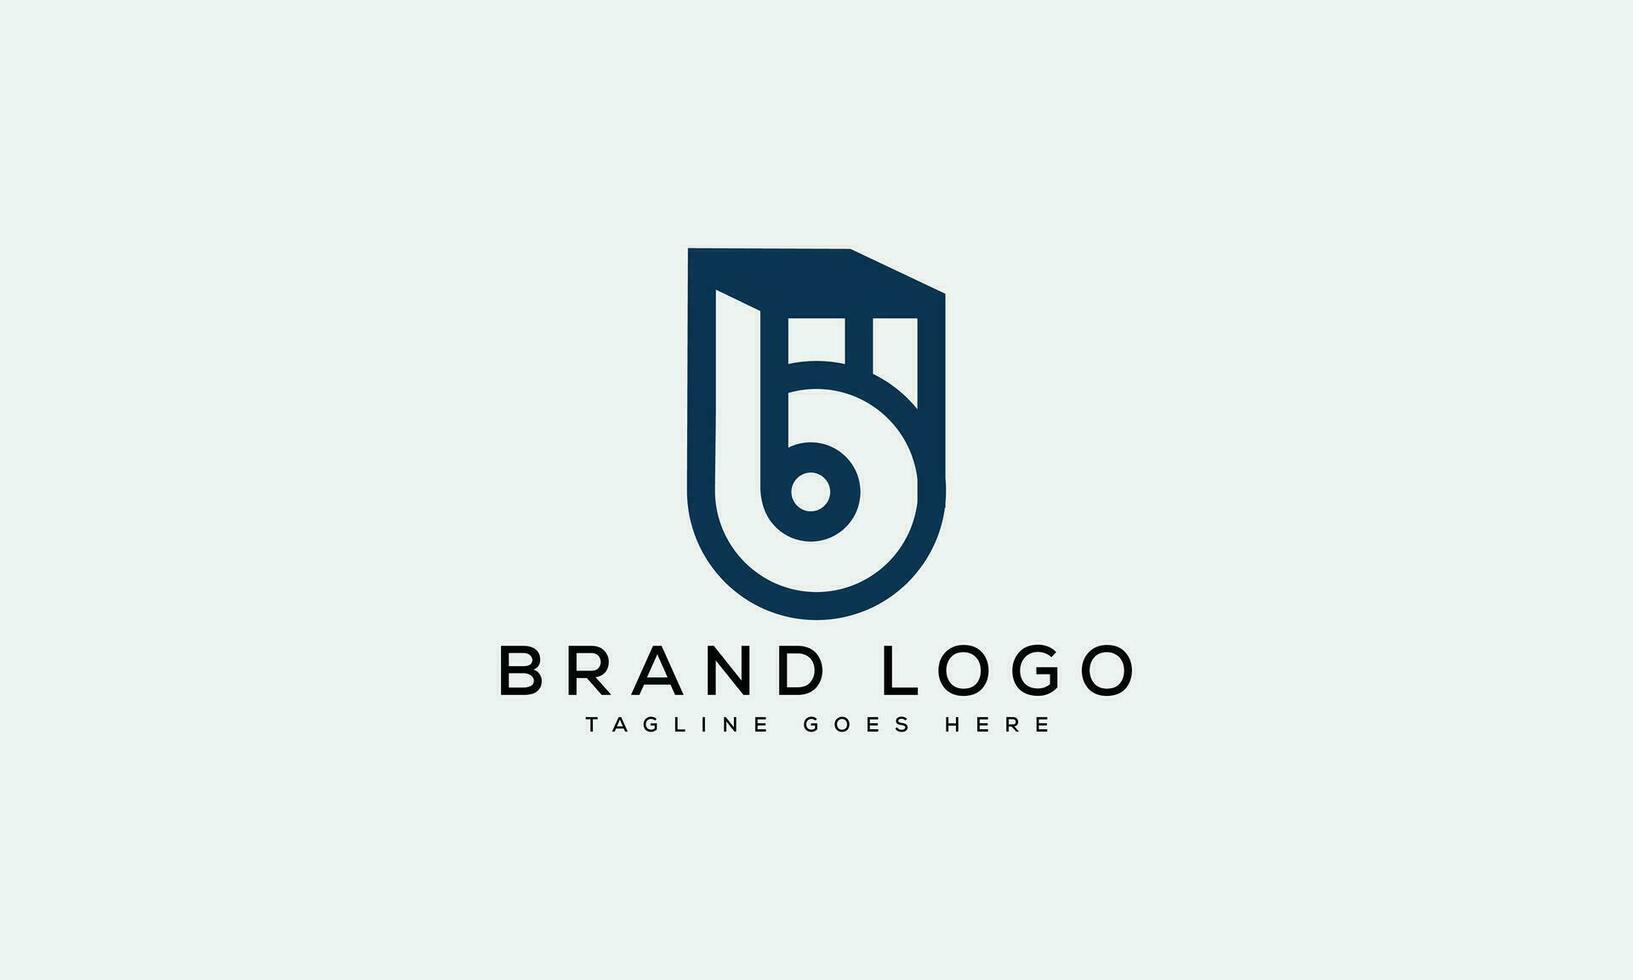 letter B logo design vector template design for brand.